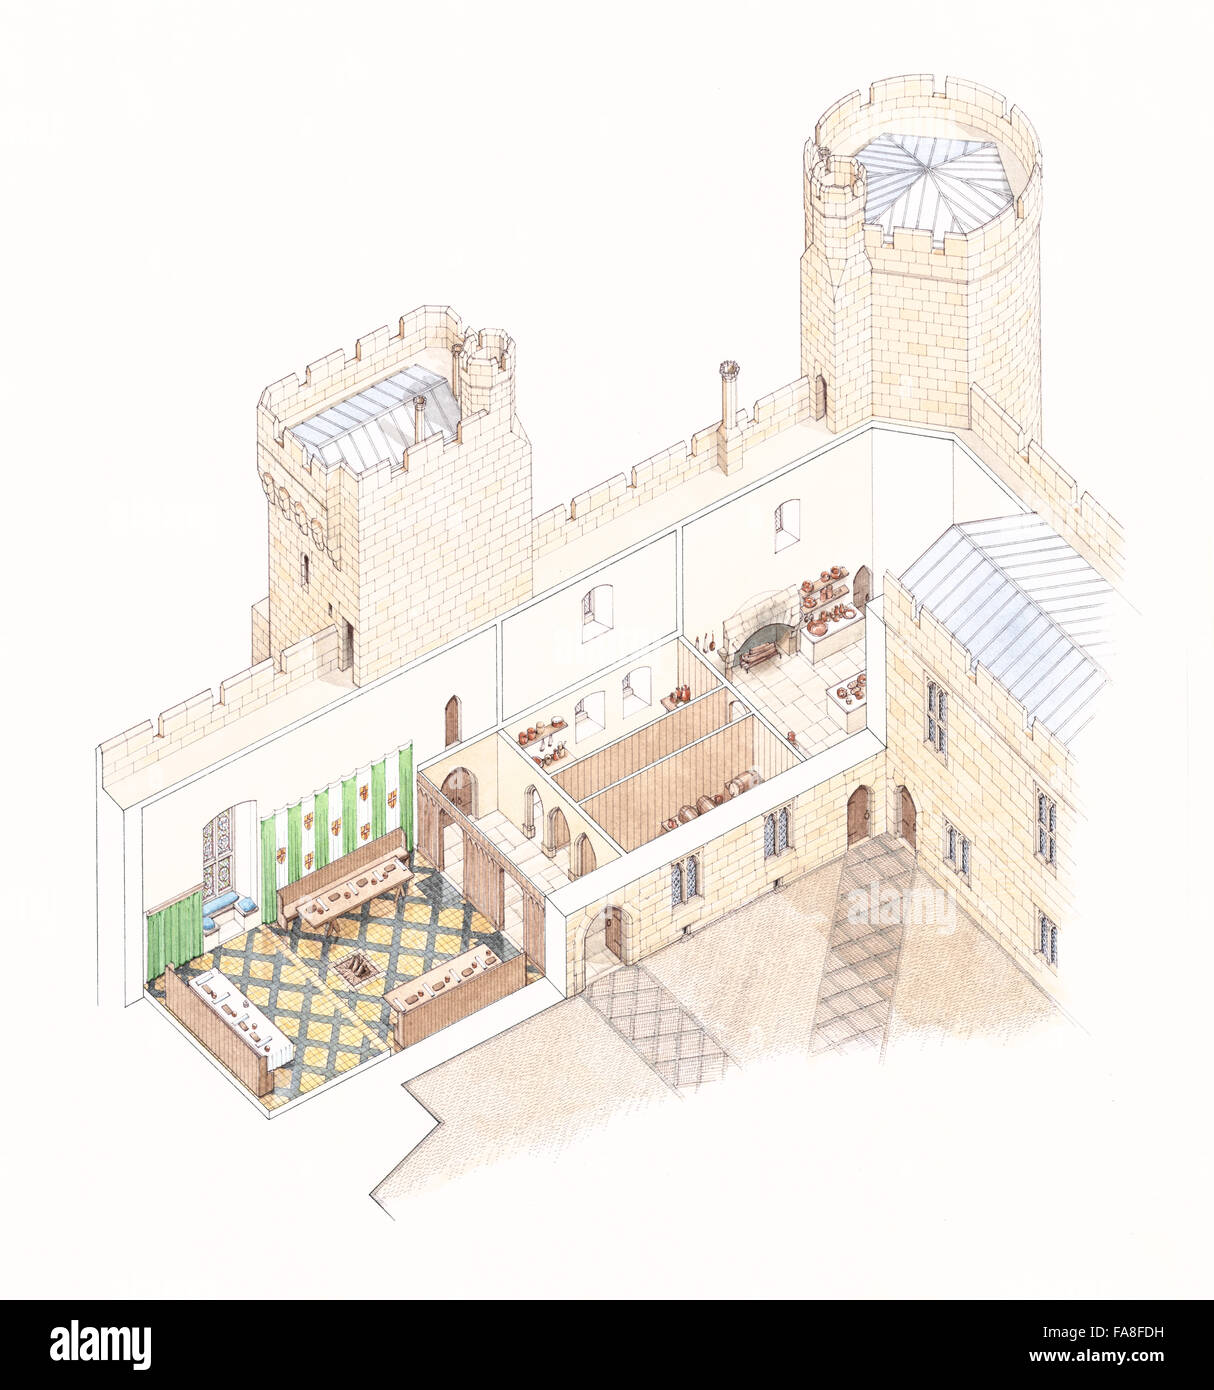 Ricostruzione in sezione il disegno in sezione della sala grande gamma al Castello Bodiam, East Sussex. Illustrazione di Stephen Conlin. Foto Stock